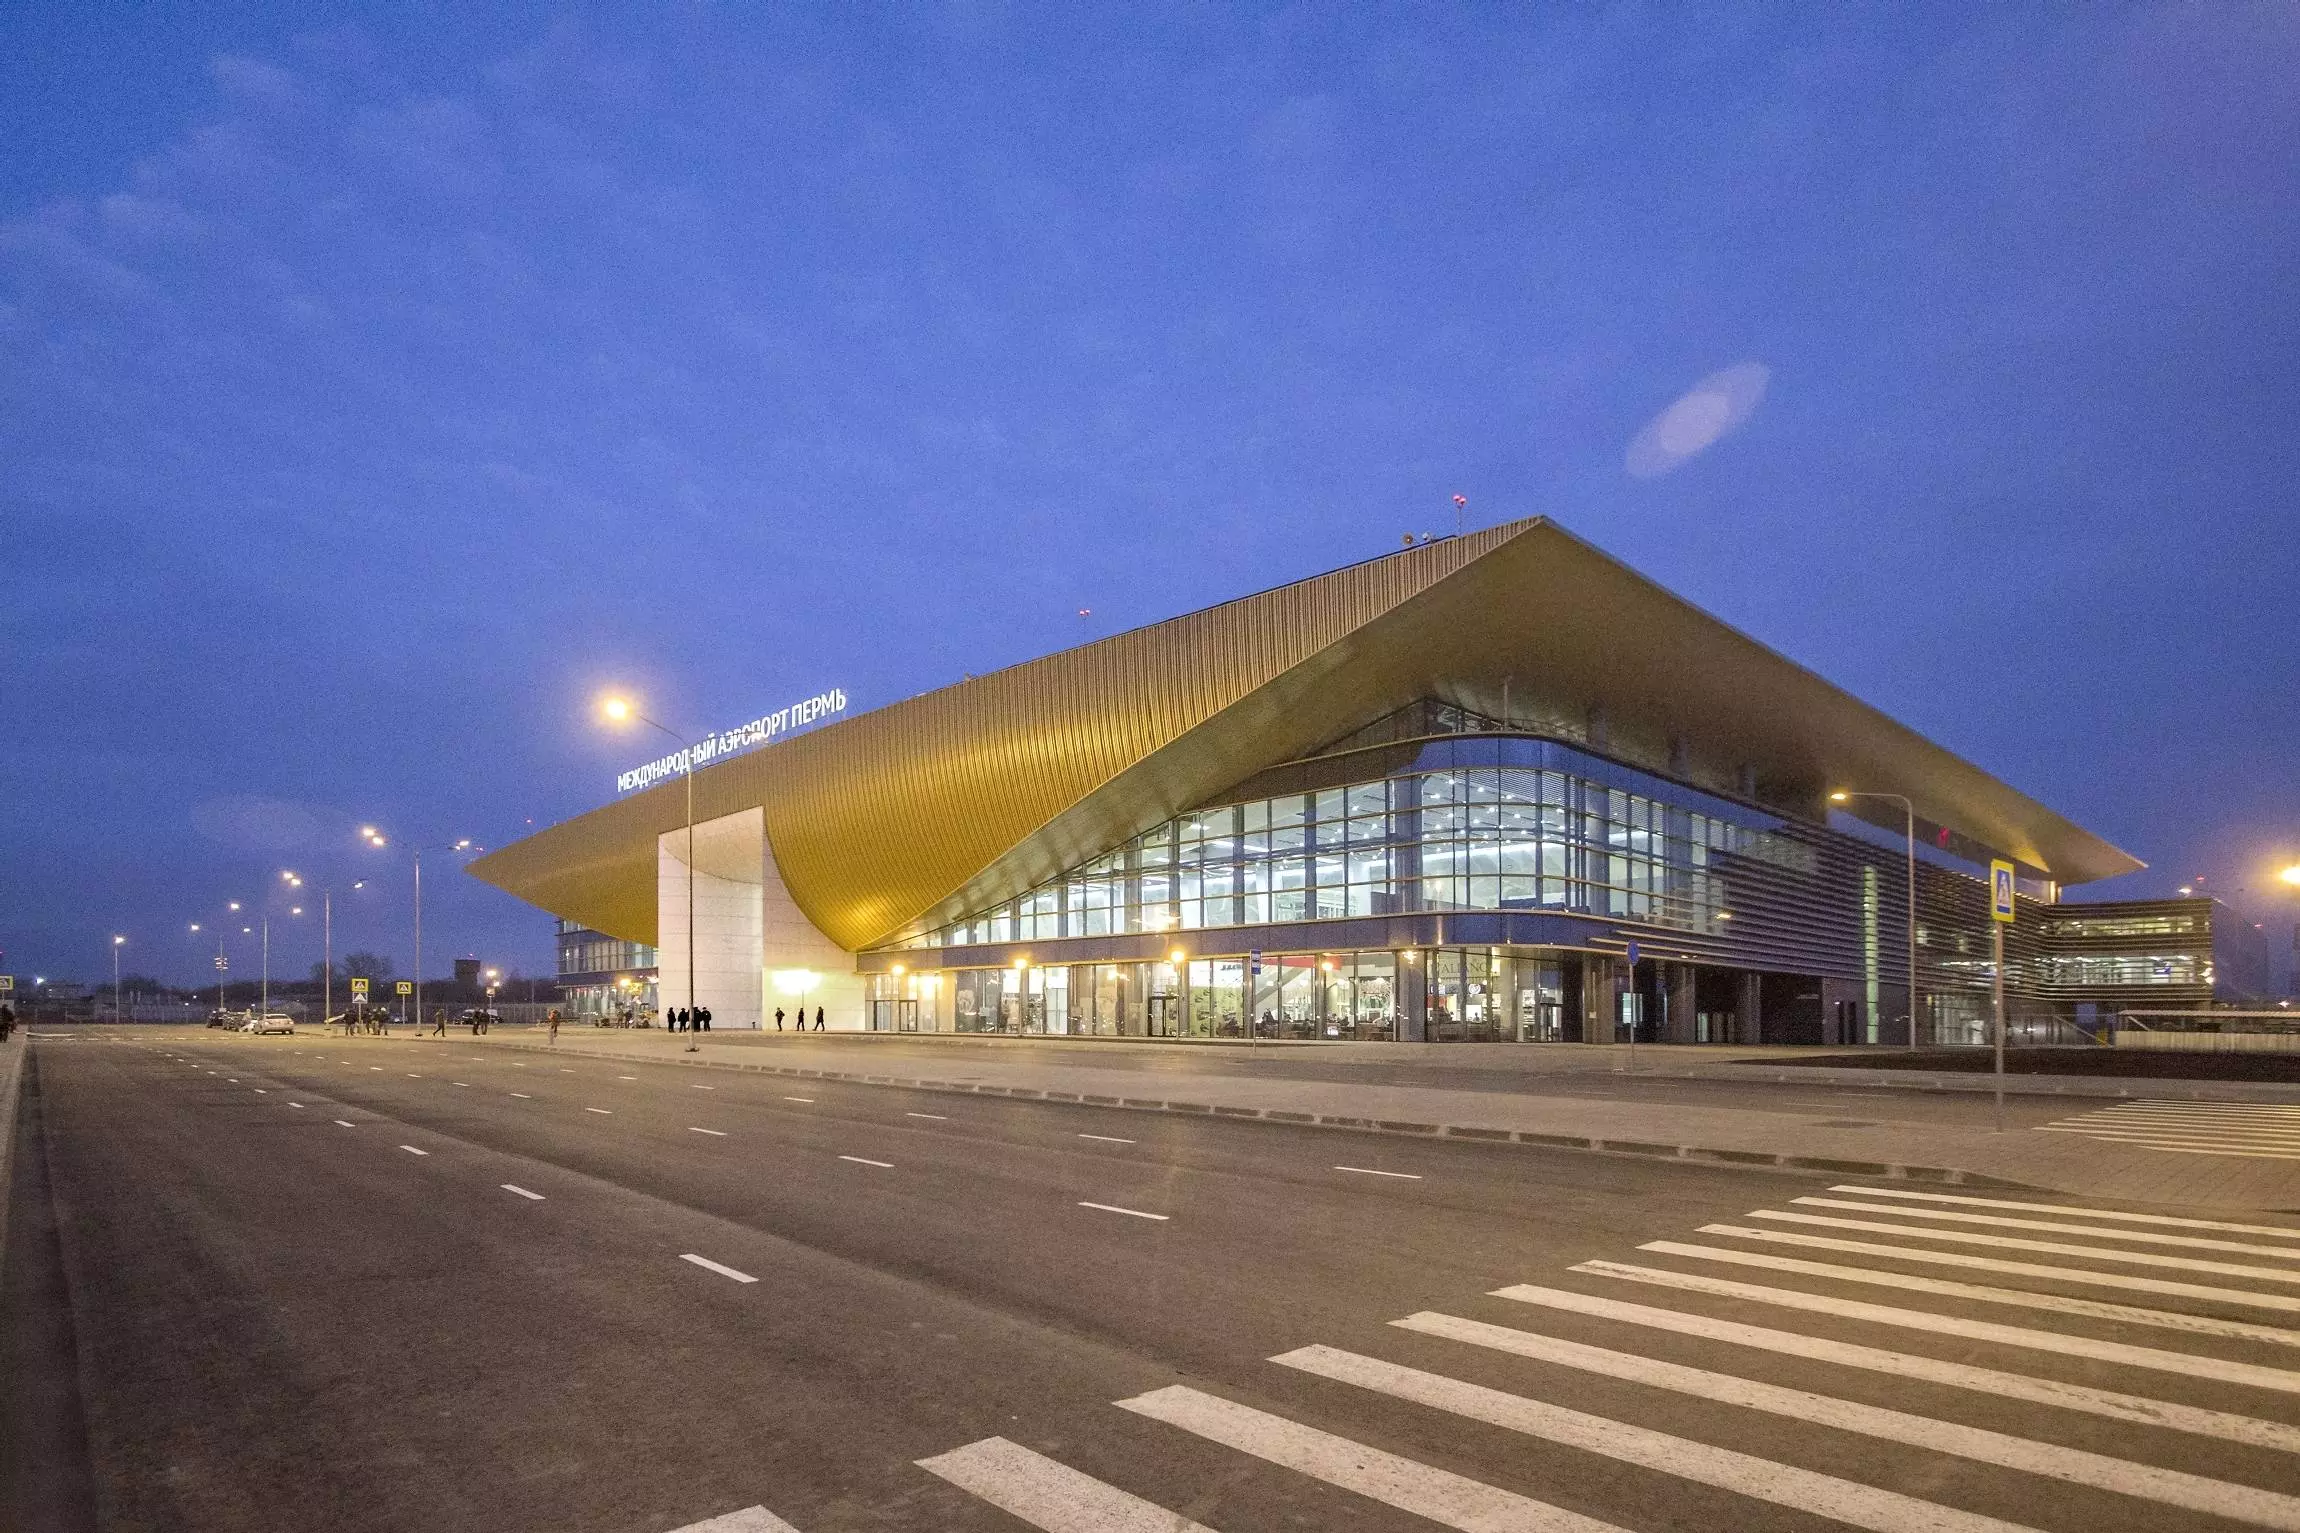 Международный аэропорт Перми «Большое Савино»